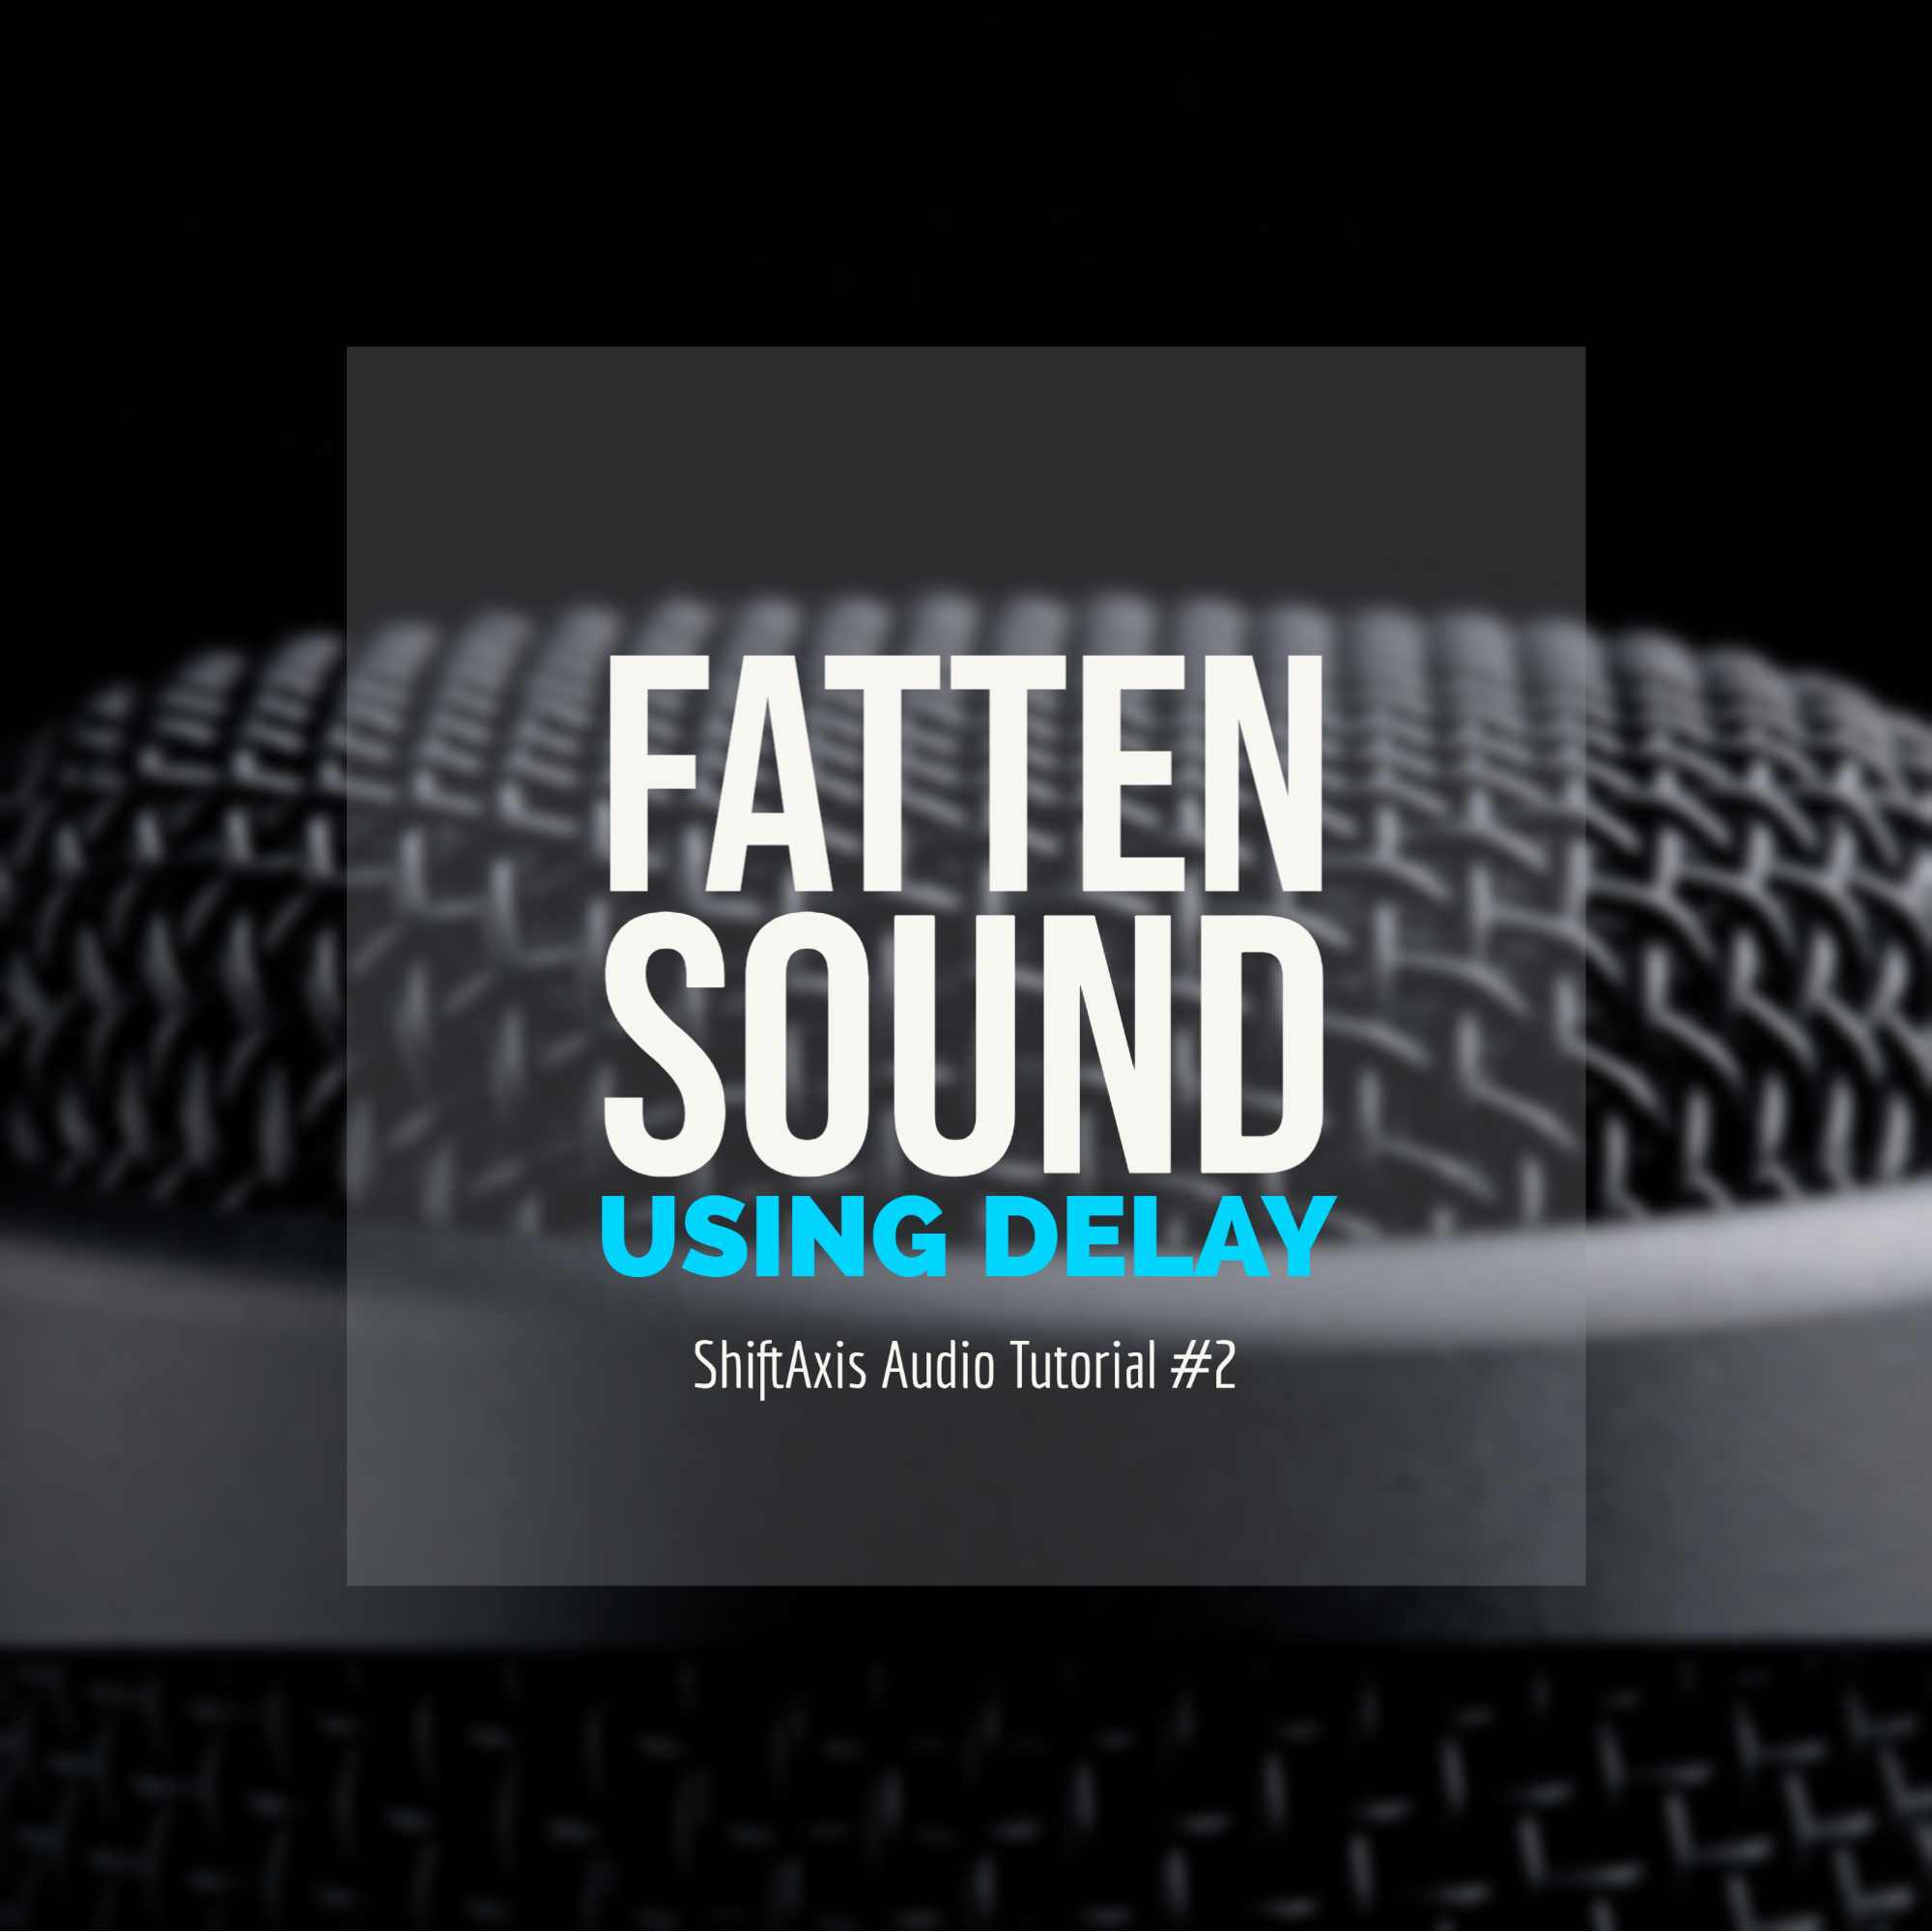 Fatten Sound Using Delay